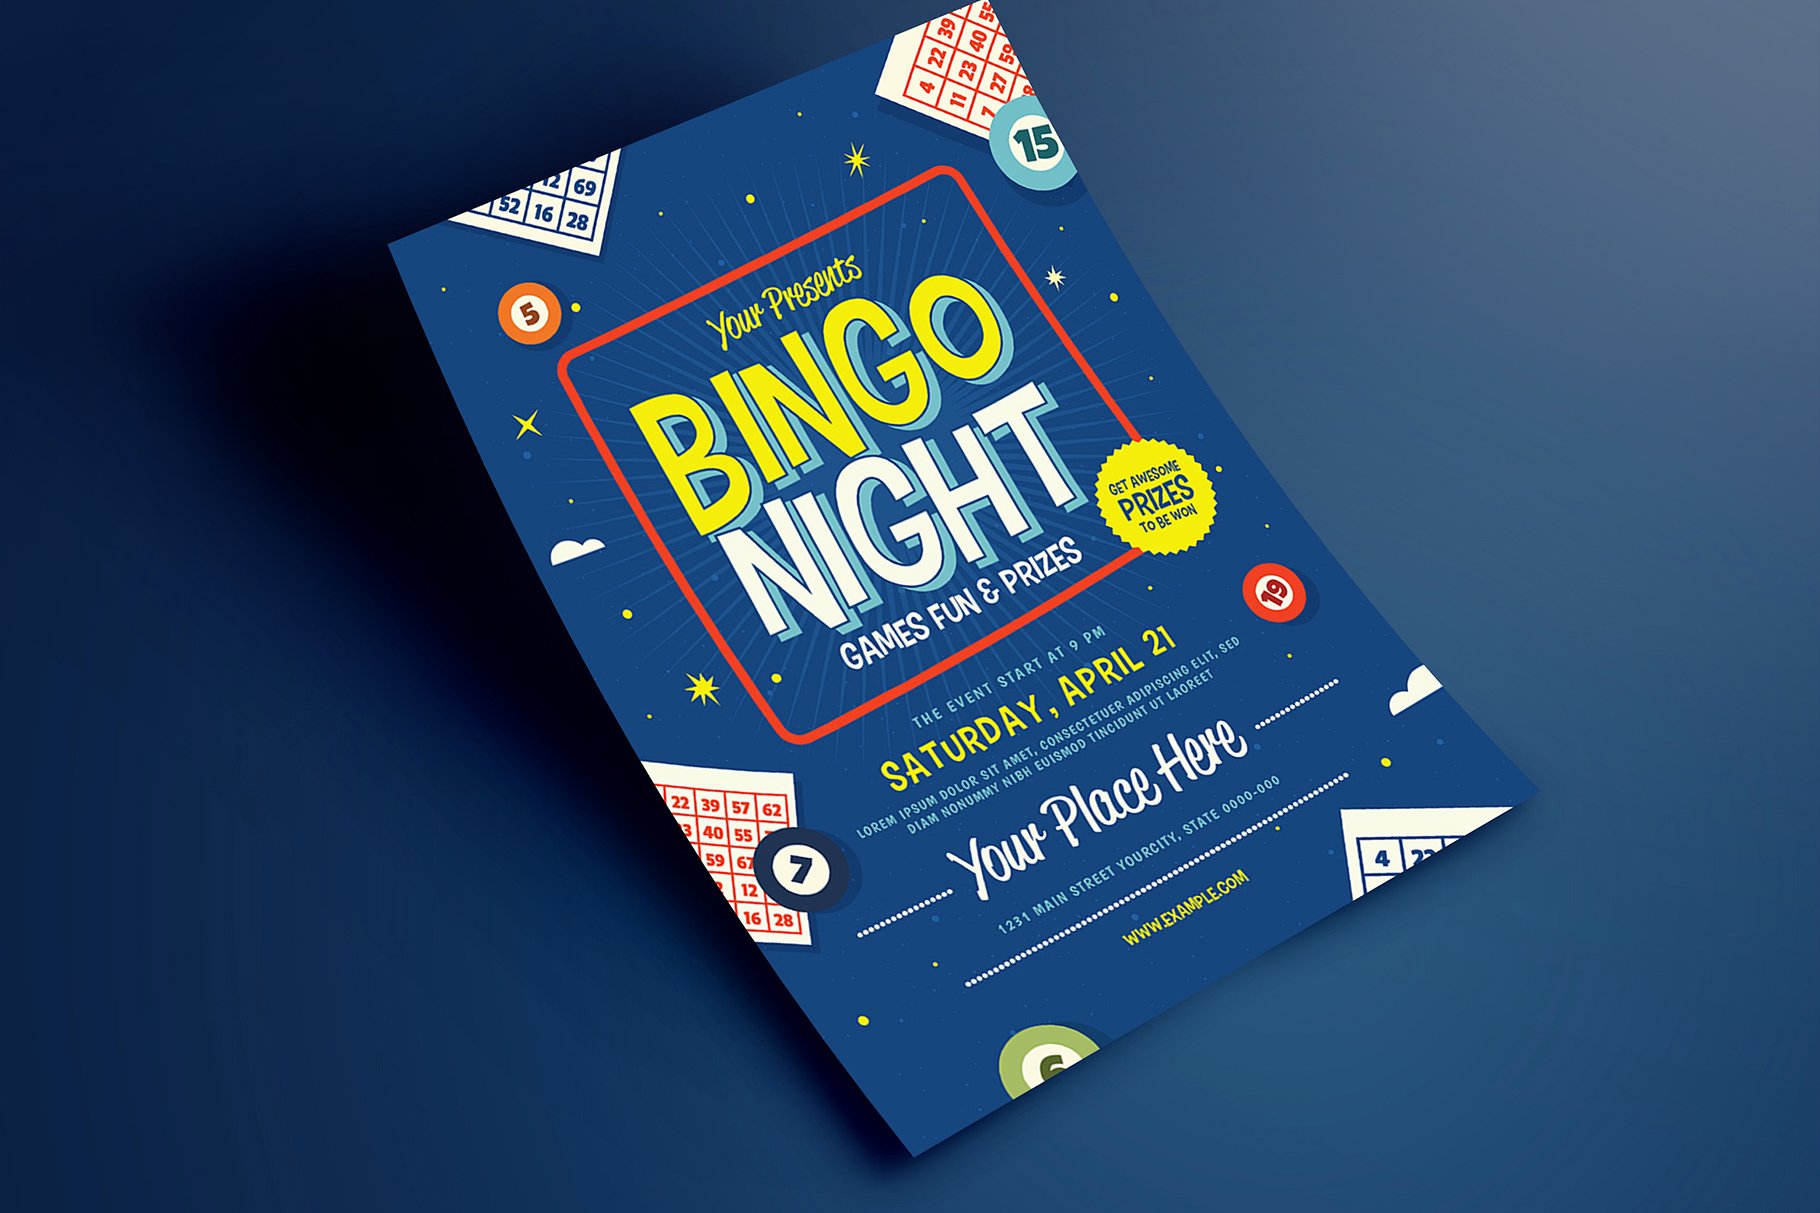 宾果之夜活动传单设计 Bingo Night Event F